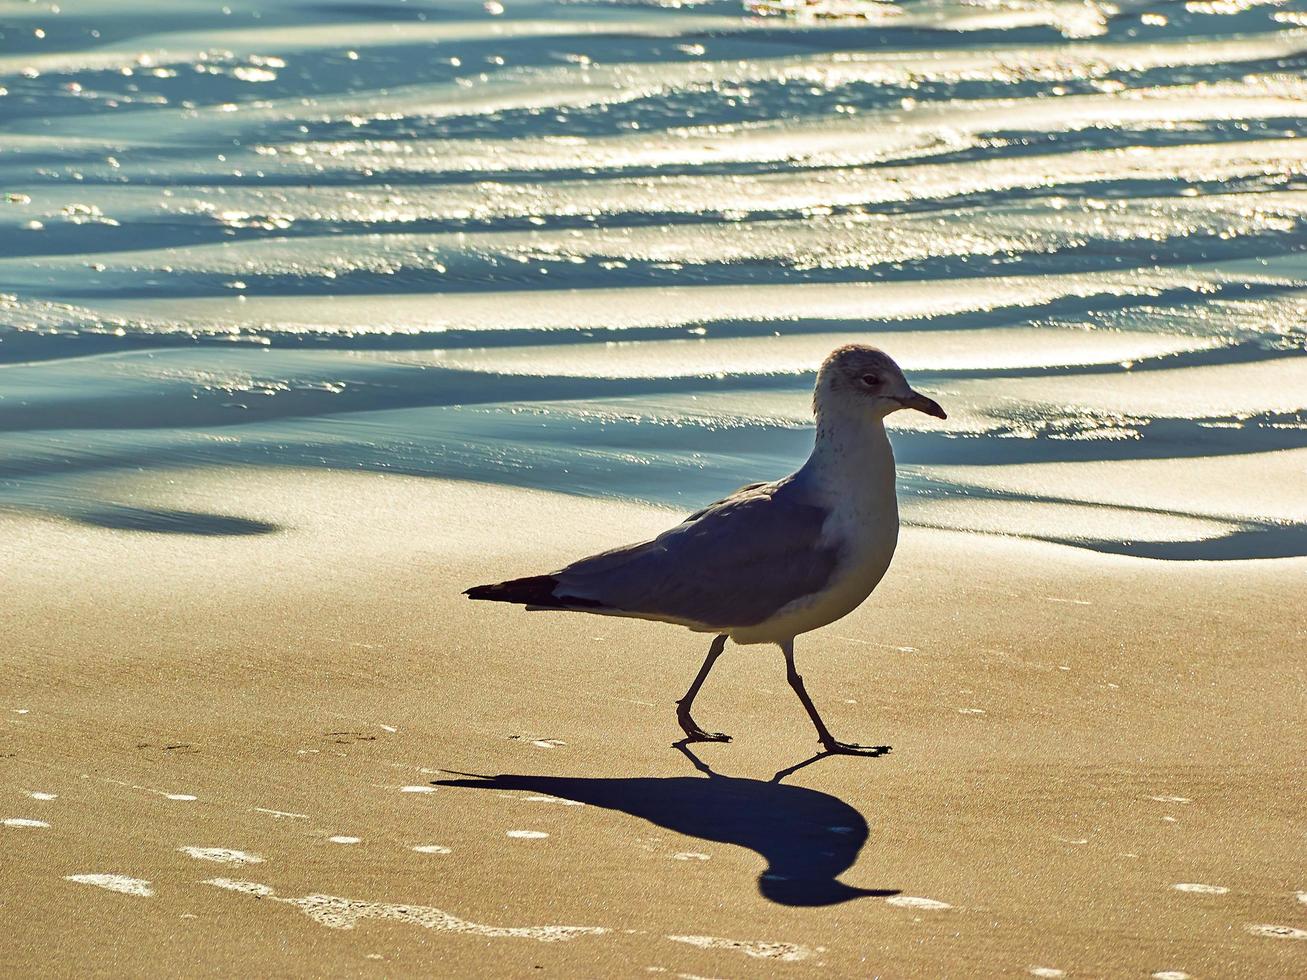 A seagull walking on a beach. photo